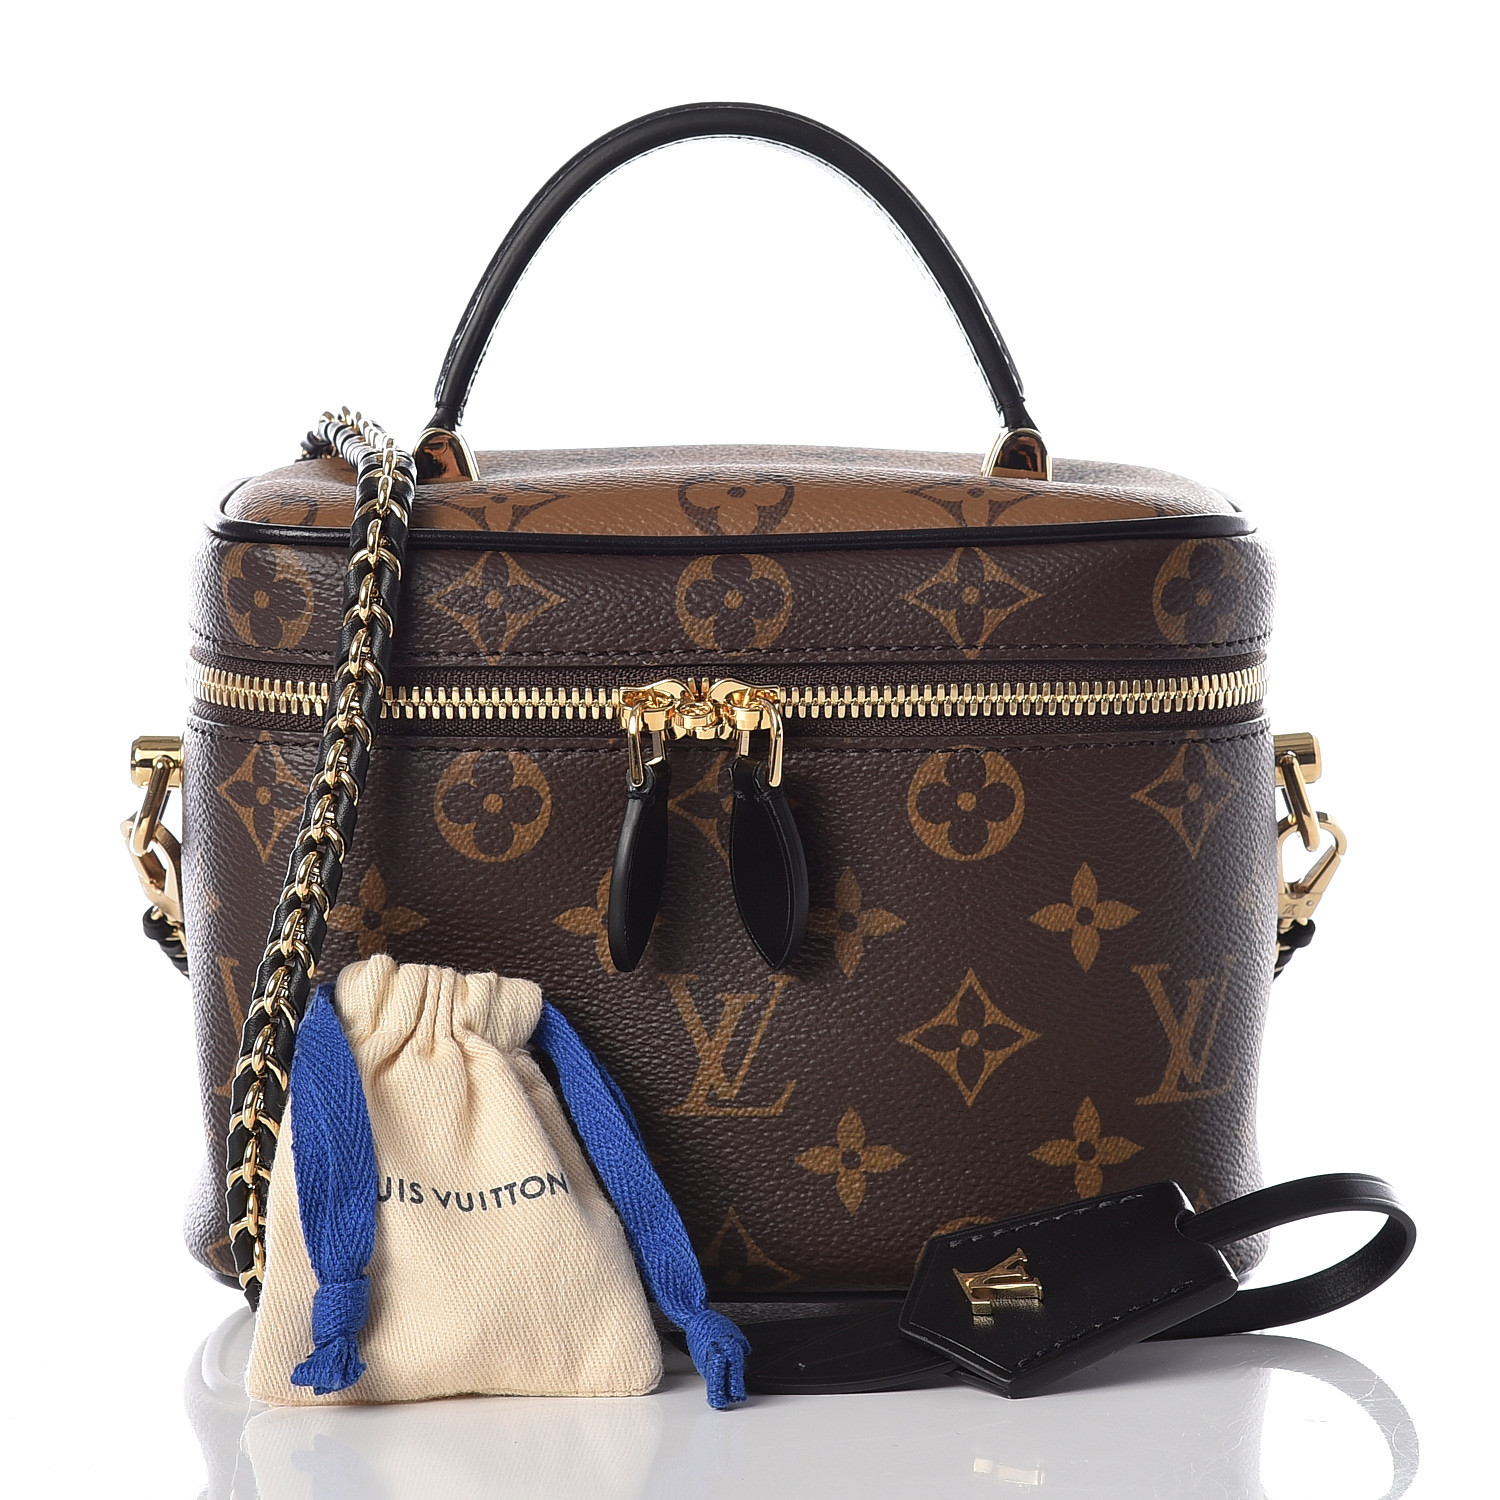 Túi xách Louis Vuitton Vanity Bag PM siêu cấp da bò màu đen size